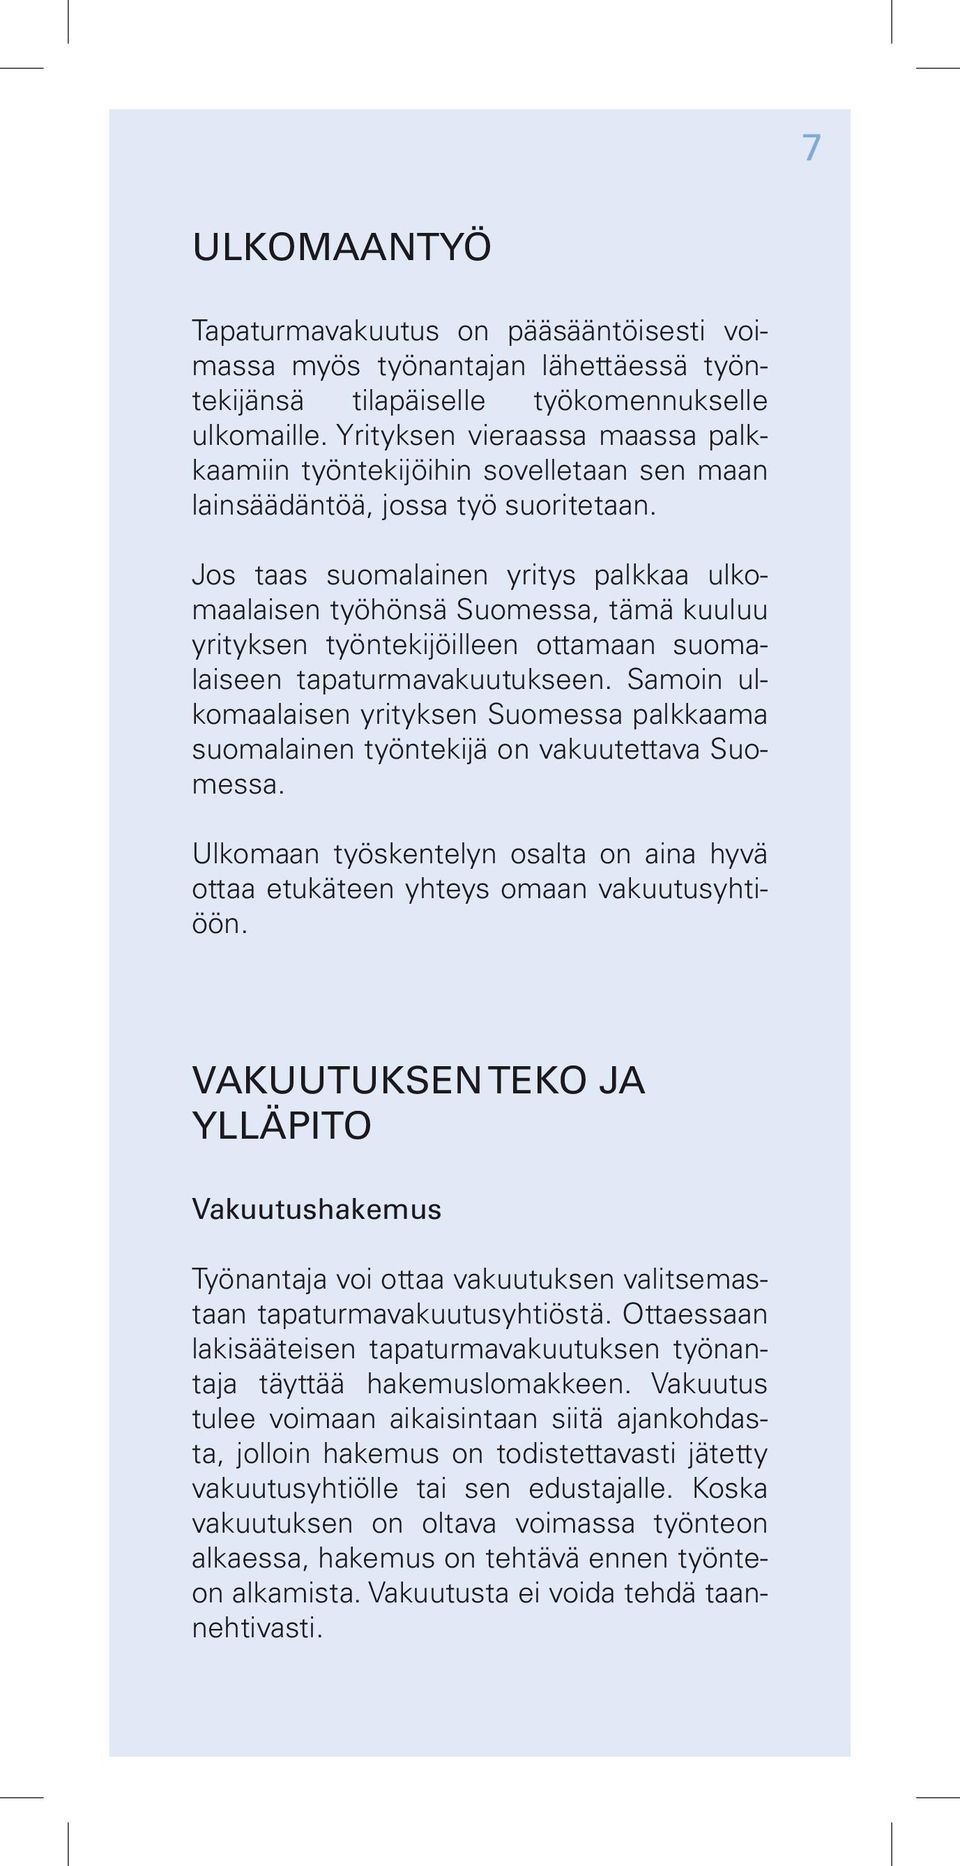 Jos taas suomalainen yritys palkkaa ulkomaalaisen työhönsä Suomessa, tämä kuuluu yrityksen työntekijöilleen ottamaan suomalaiseen tapaturmavakuutukseen.